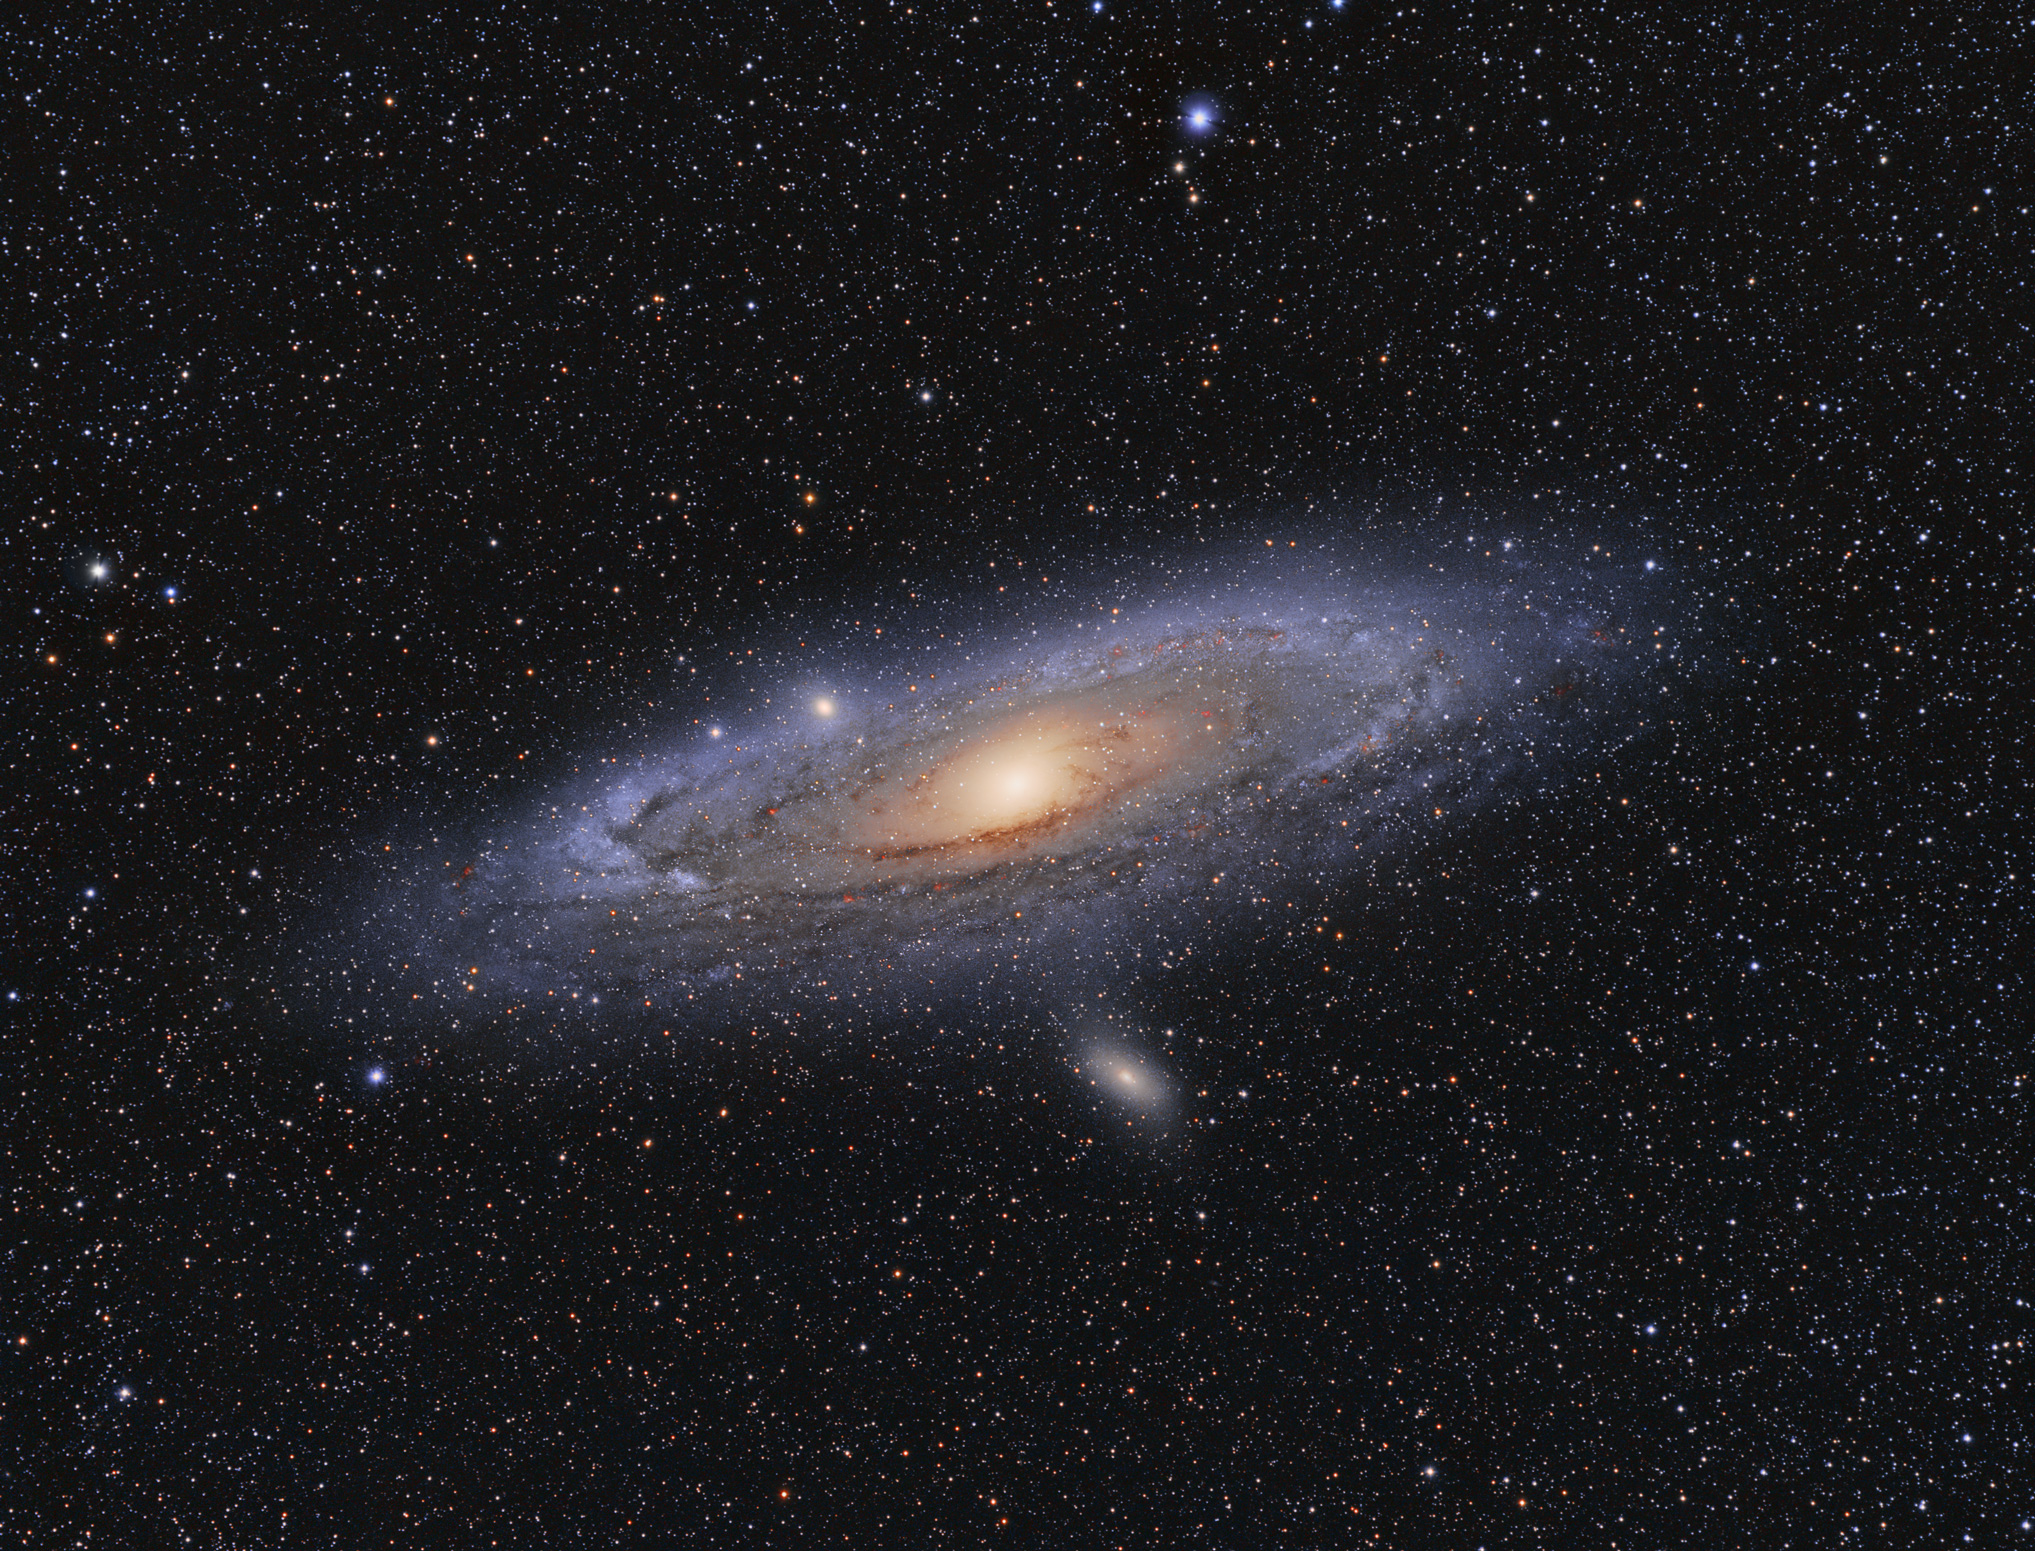 Great Andromeda Galaxy